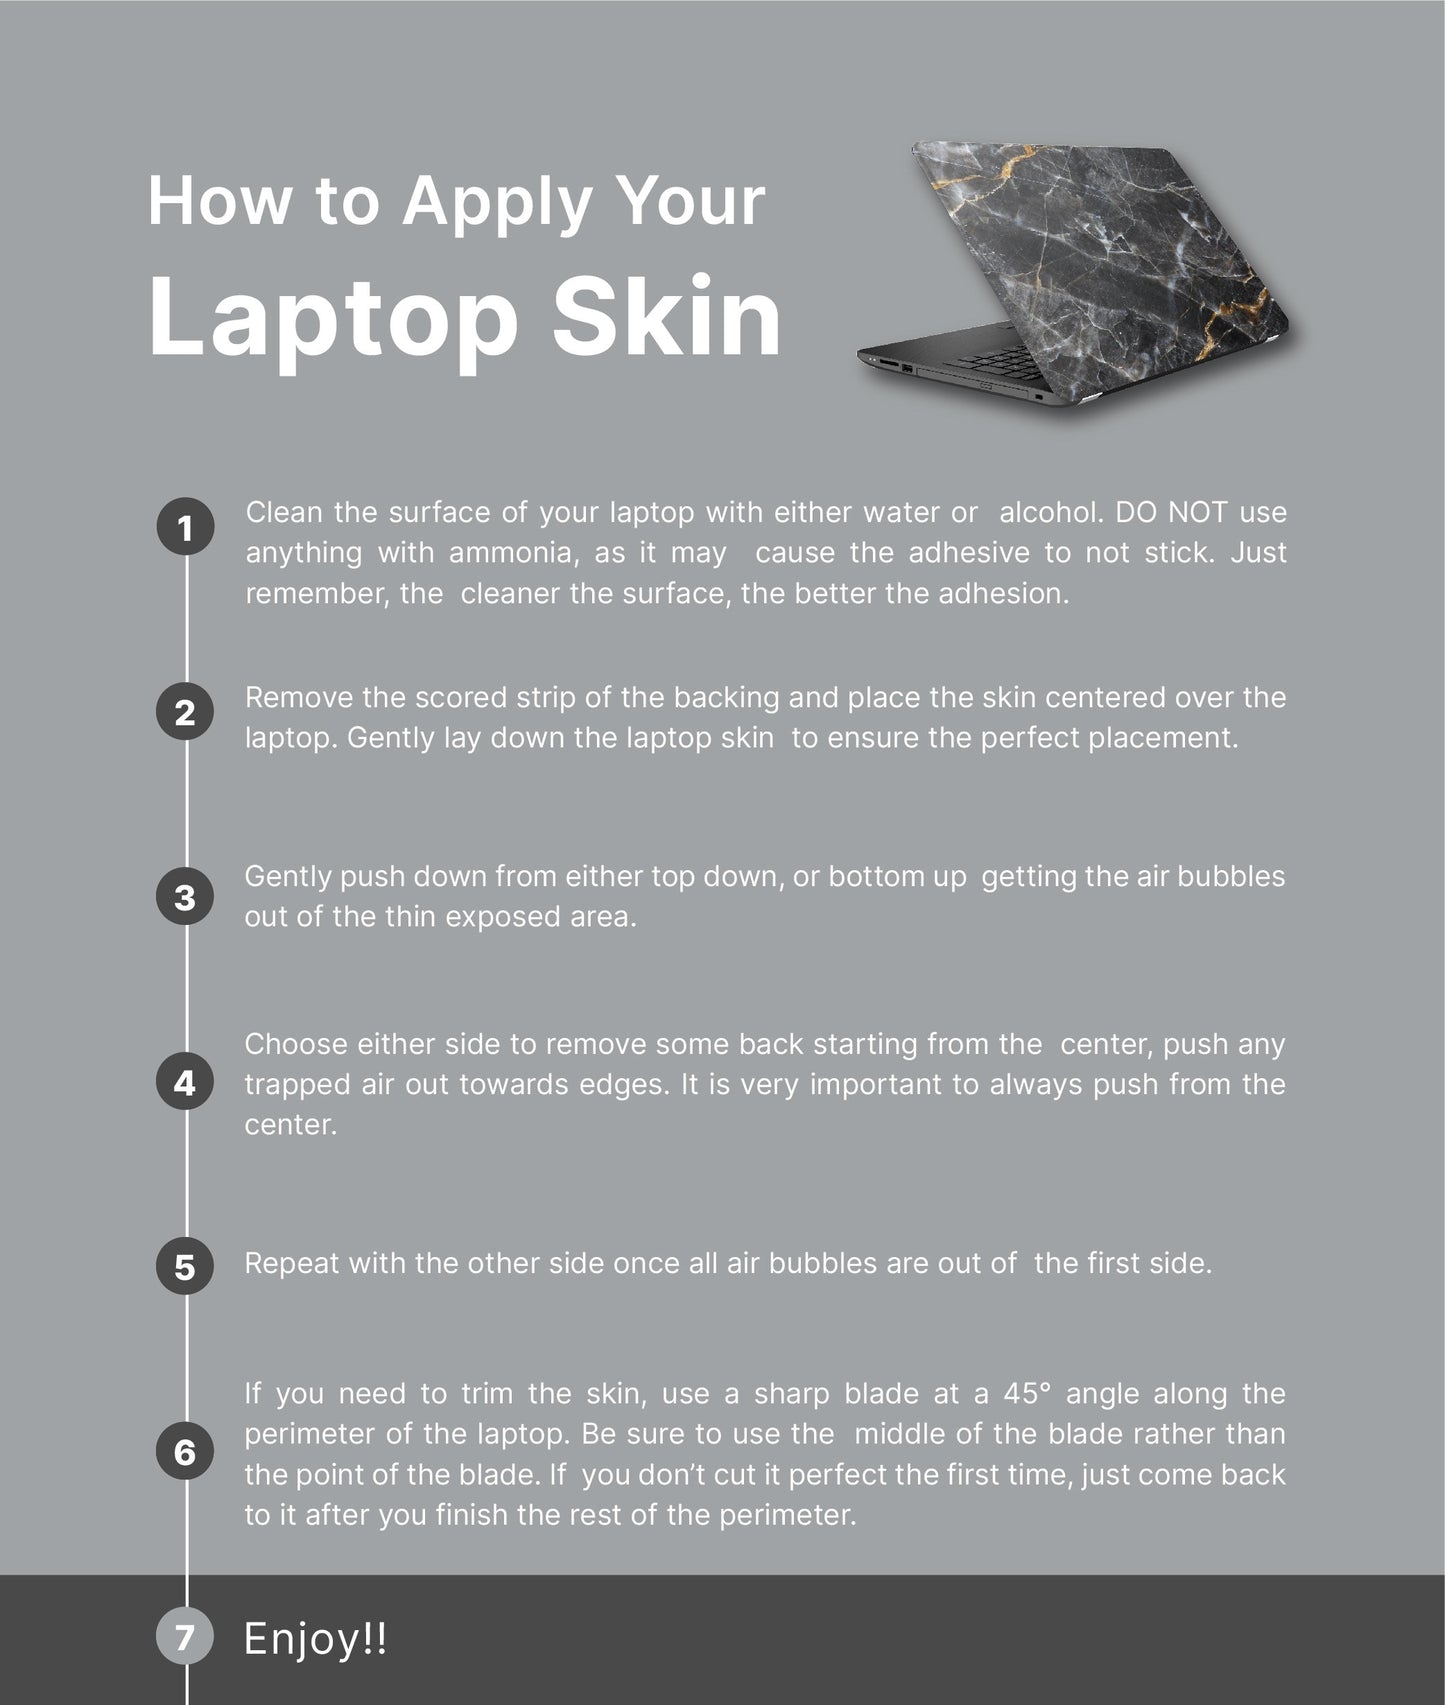 Black Roses Laptop Skin, Laptop Cover, Laptop Skins, Removable Laptop Skins, Laptop Decal, Customized Laptop Skin, Laptop Stickers 209